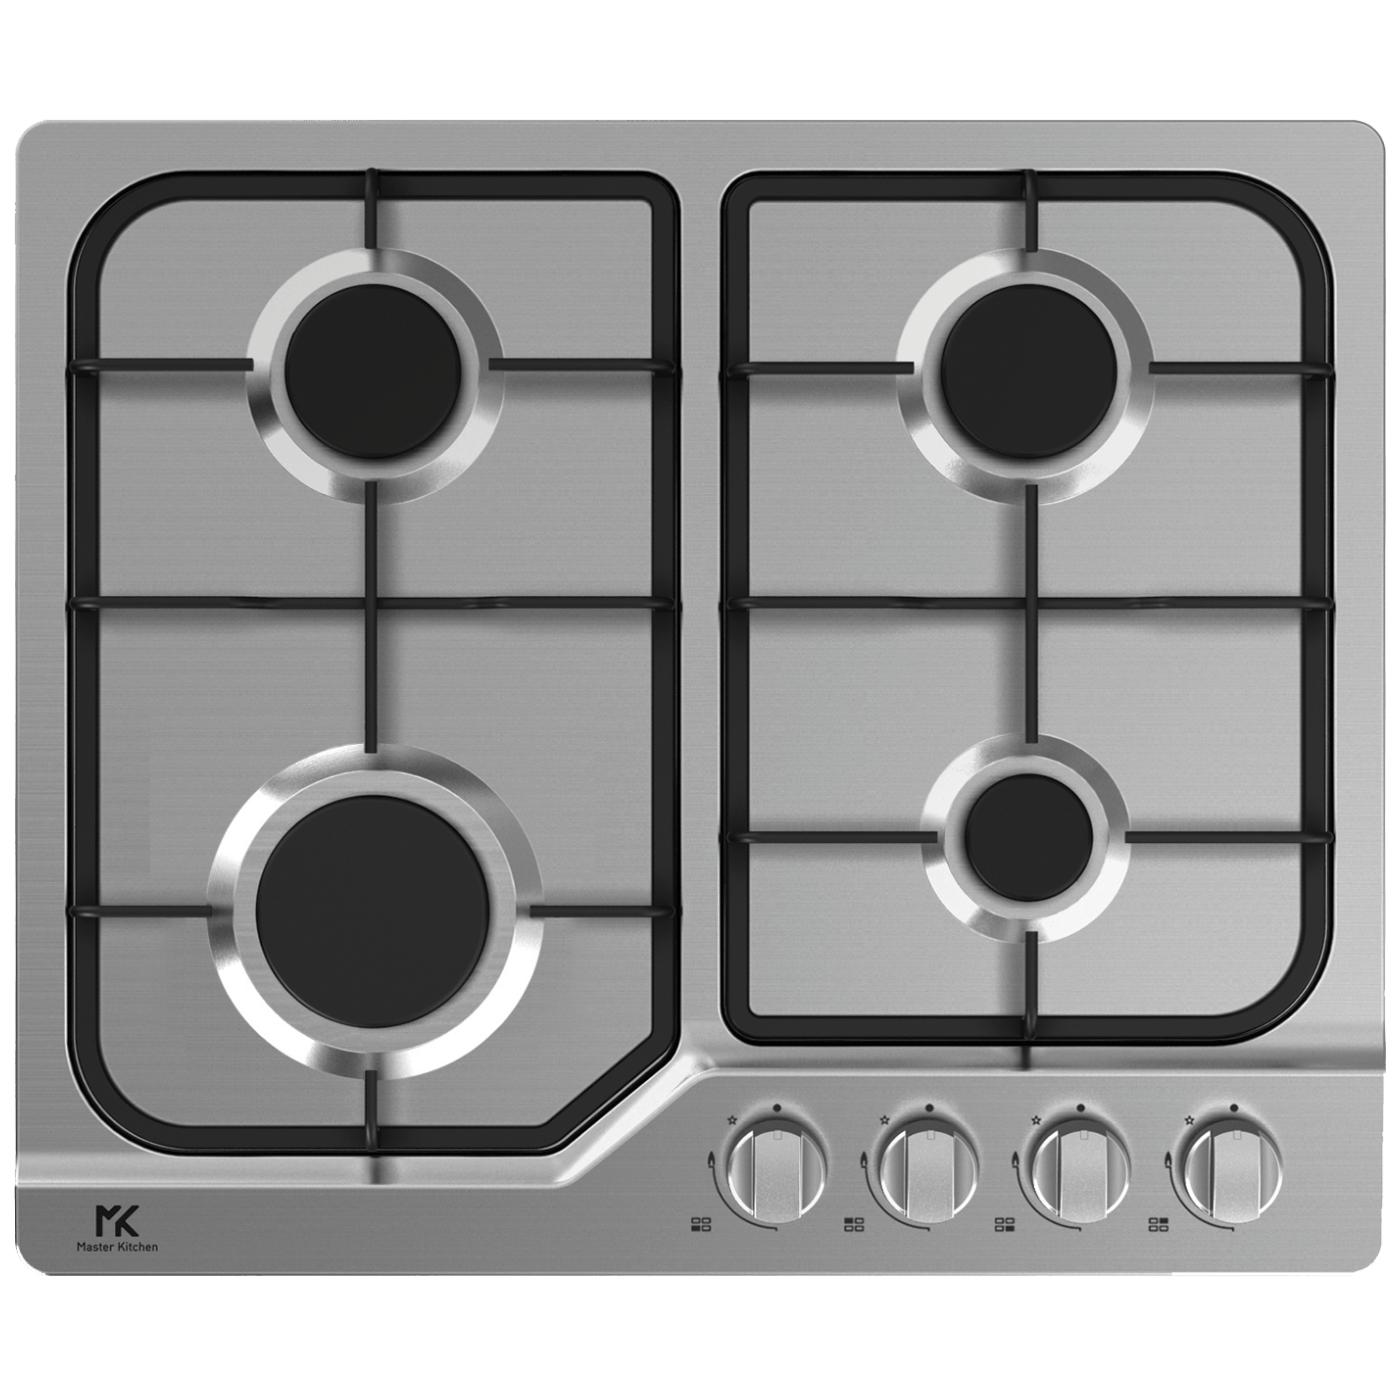 Ugradbena plinska ploča za kuhanje, INOX